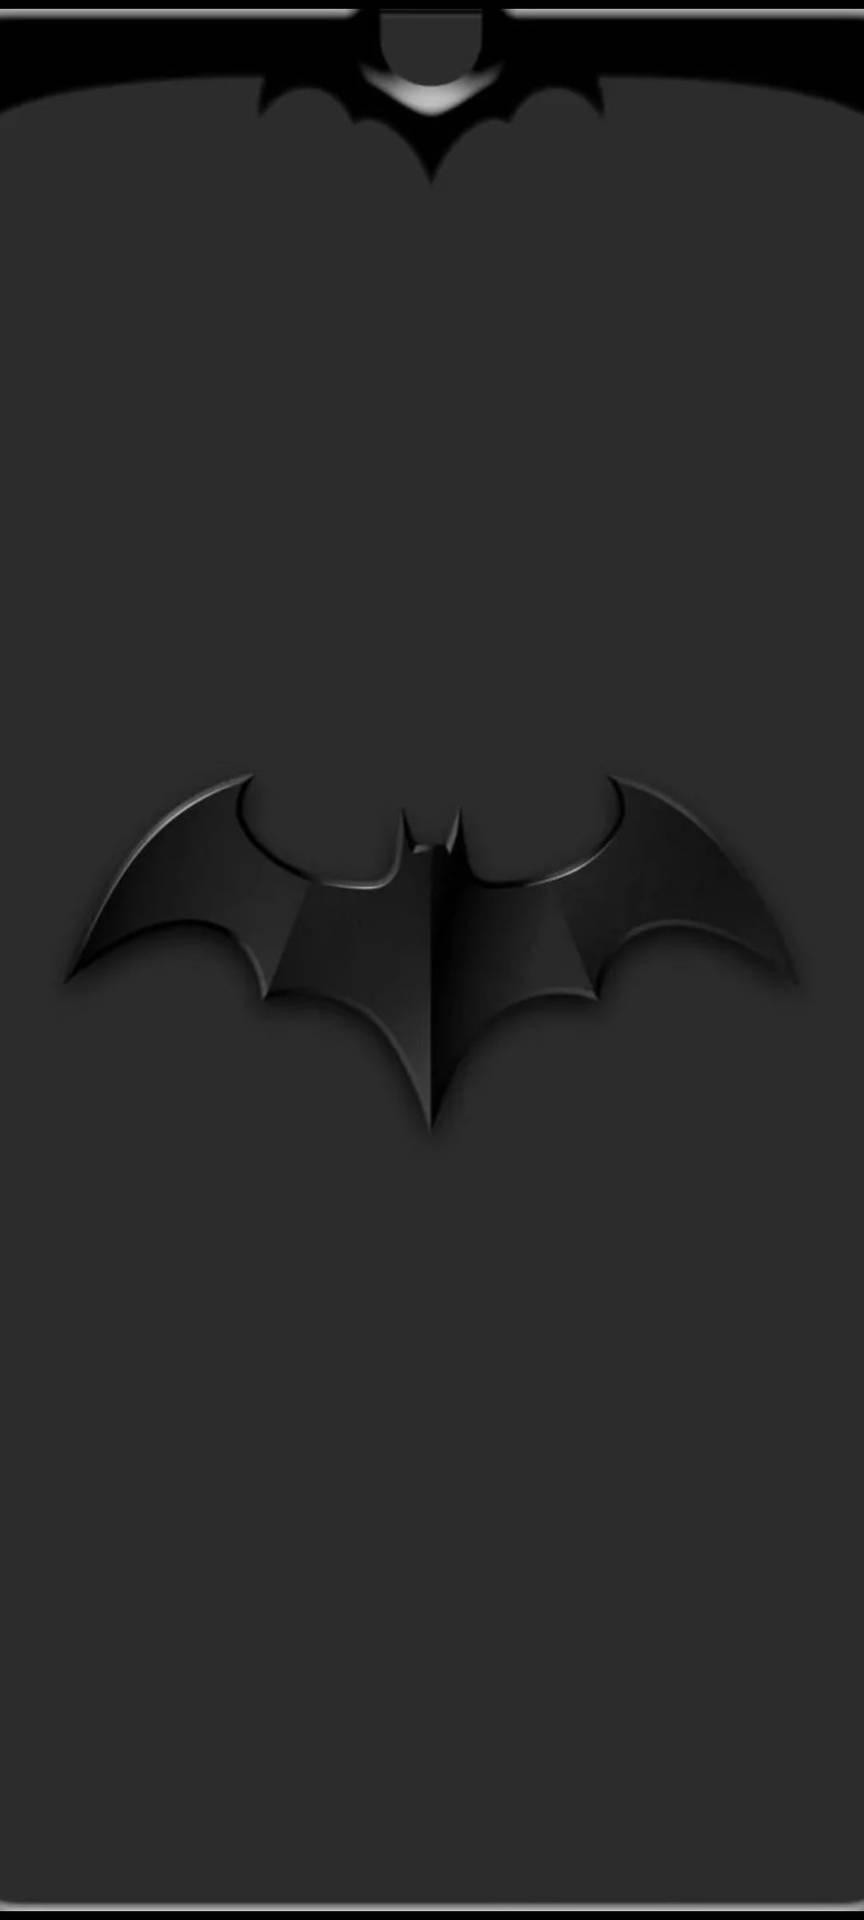 Download Embossed Black Batman Logo Iphone Wallpaper 